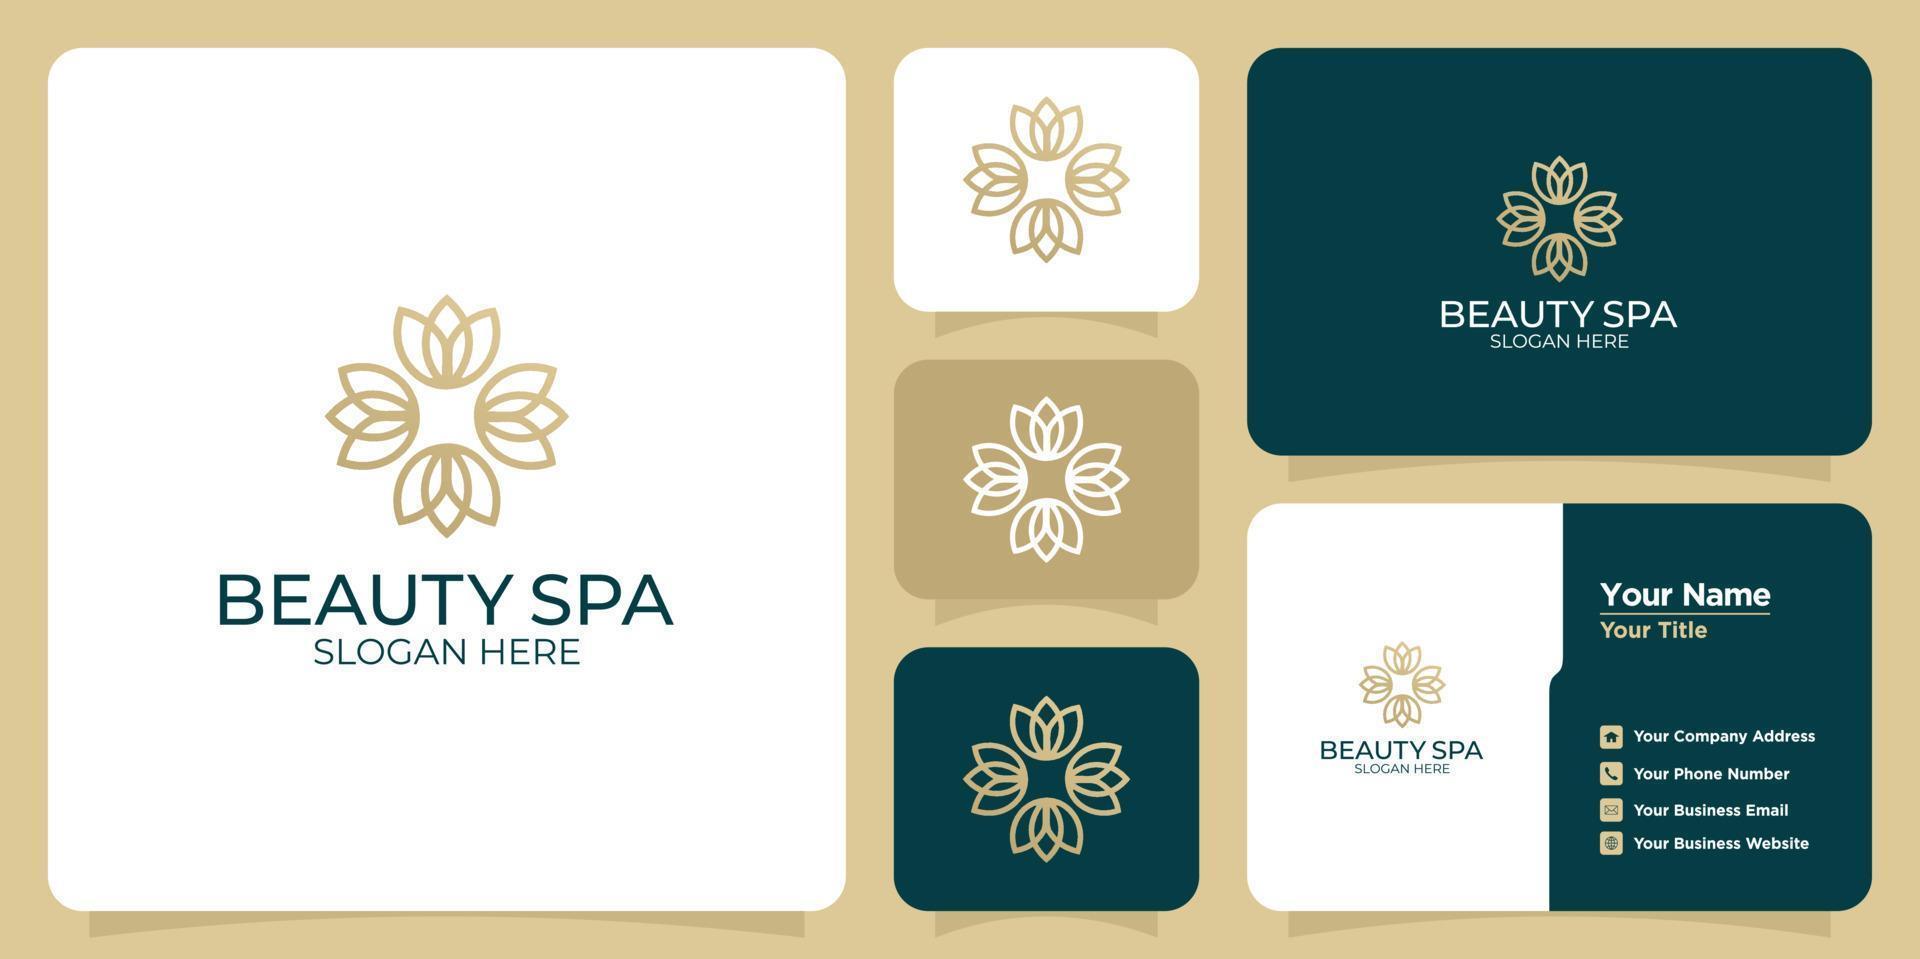 conjunto de logotipos y tarjetas de visita de plantillas florales femeninas y modernas dibujadas a mano vector